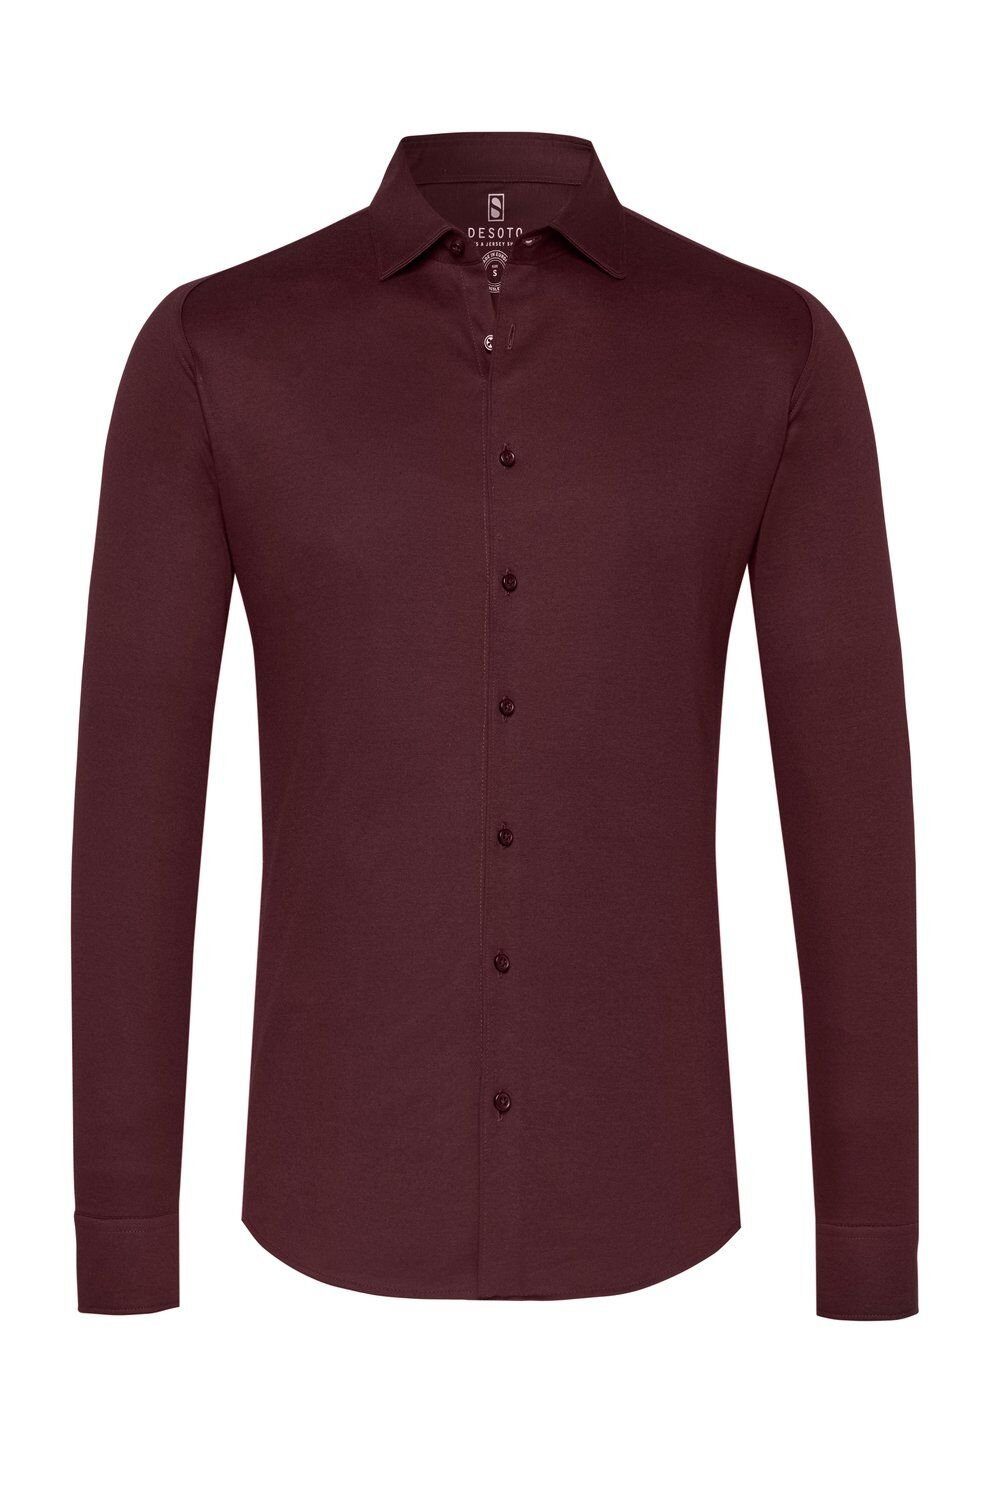 Desoto im piquee burgundy dark Businesshemd Uni-Look